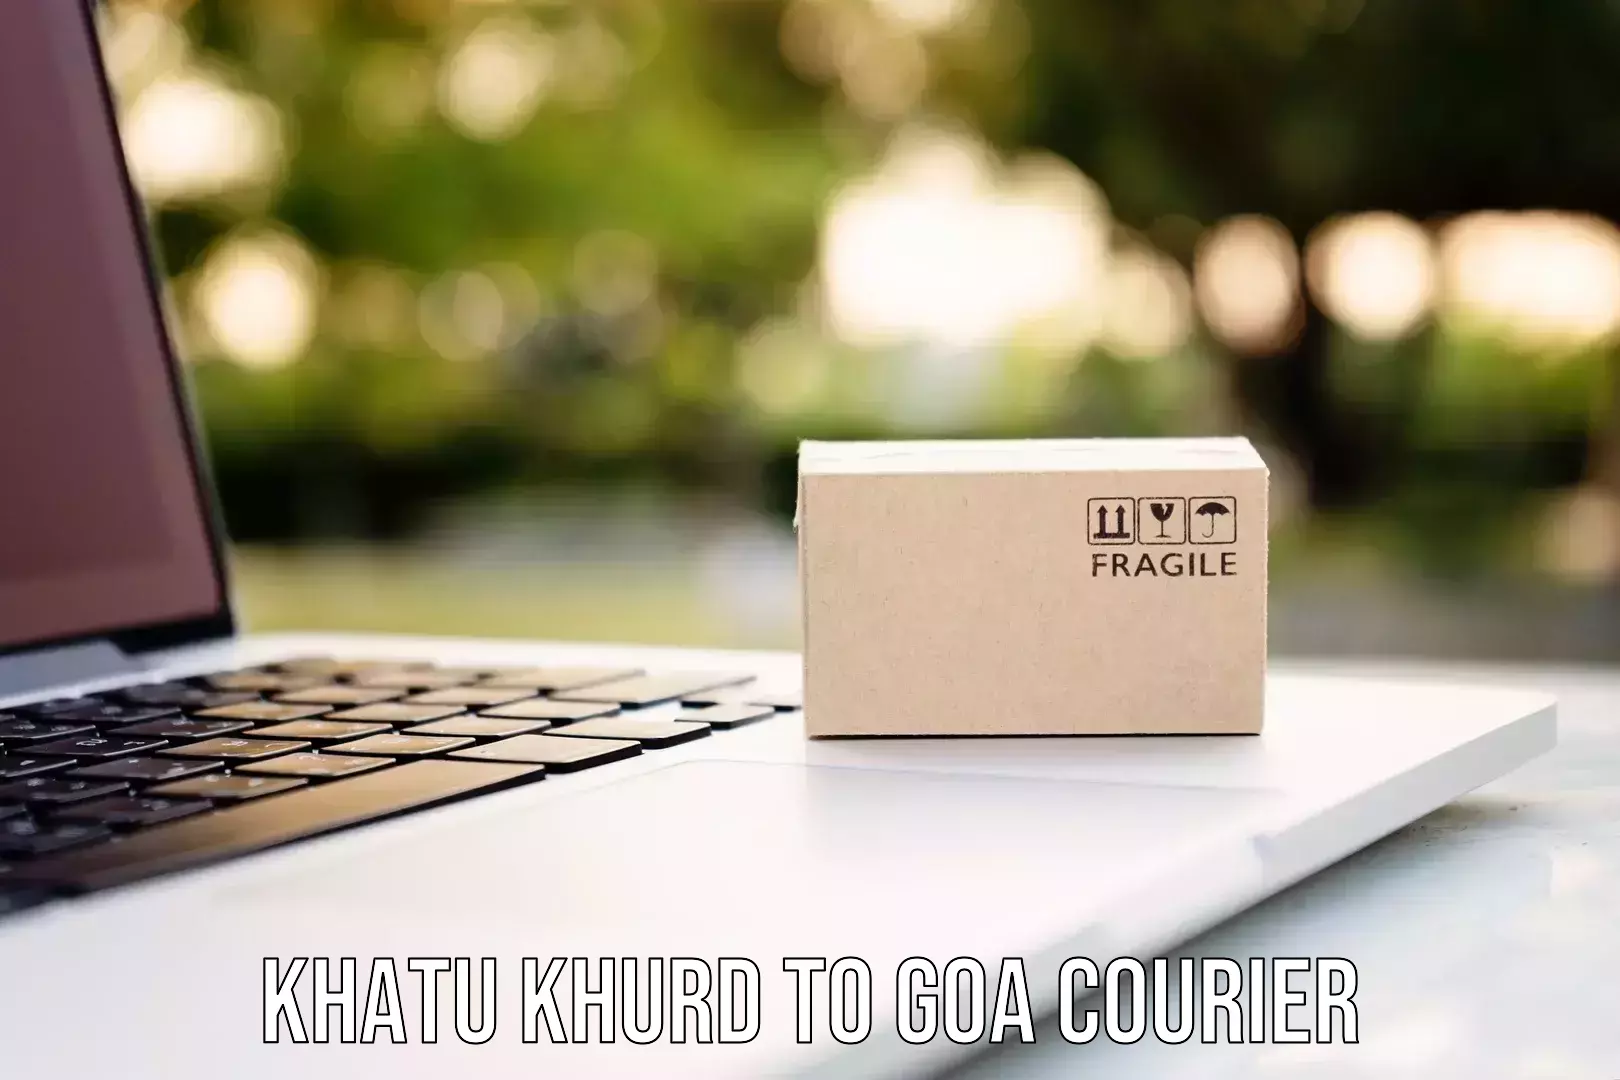 Efficient order fulfillment Khatu Khurd to IIT Goa